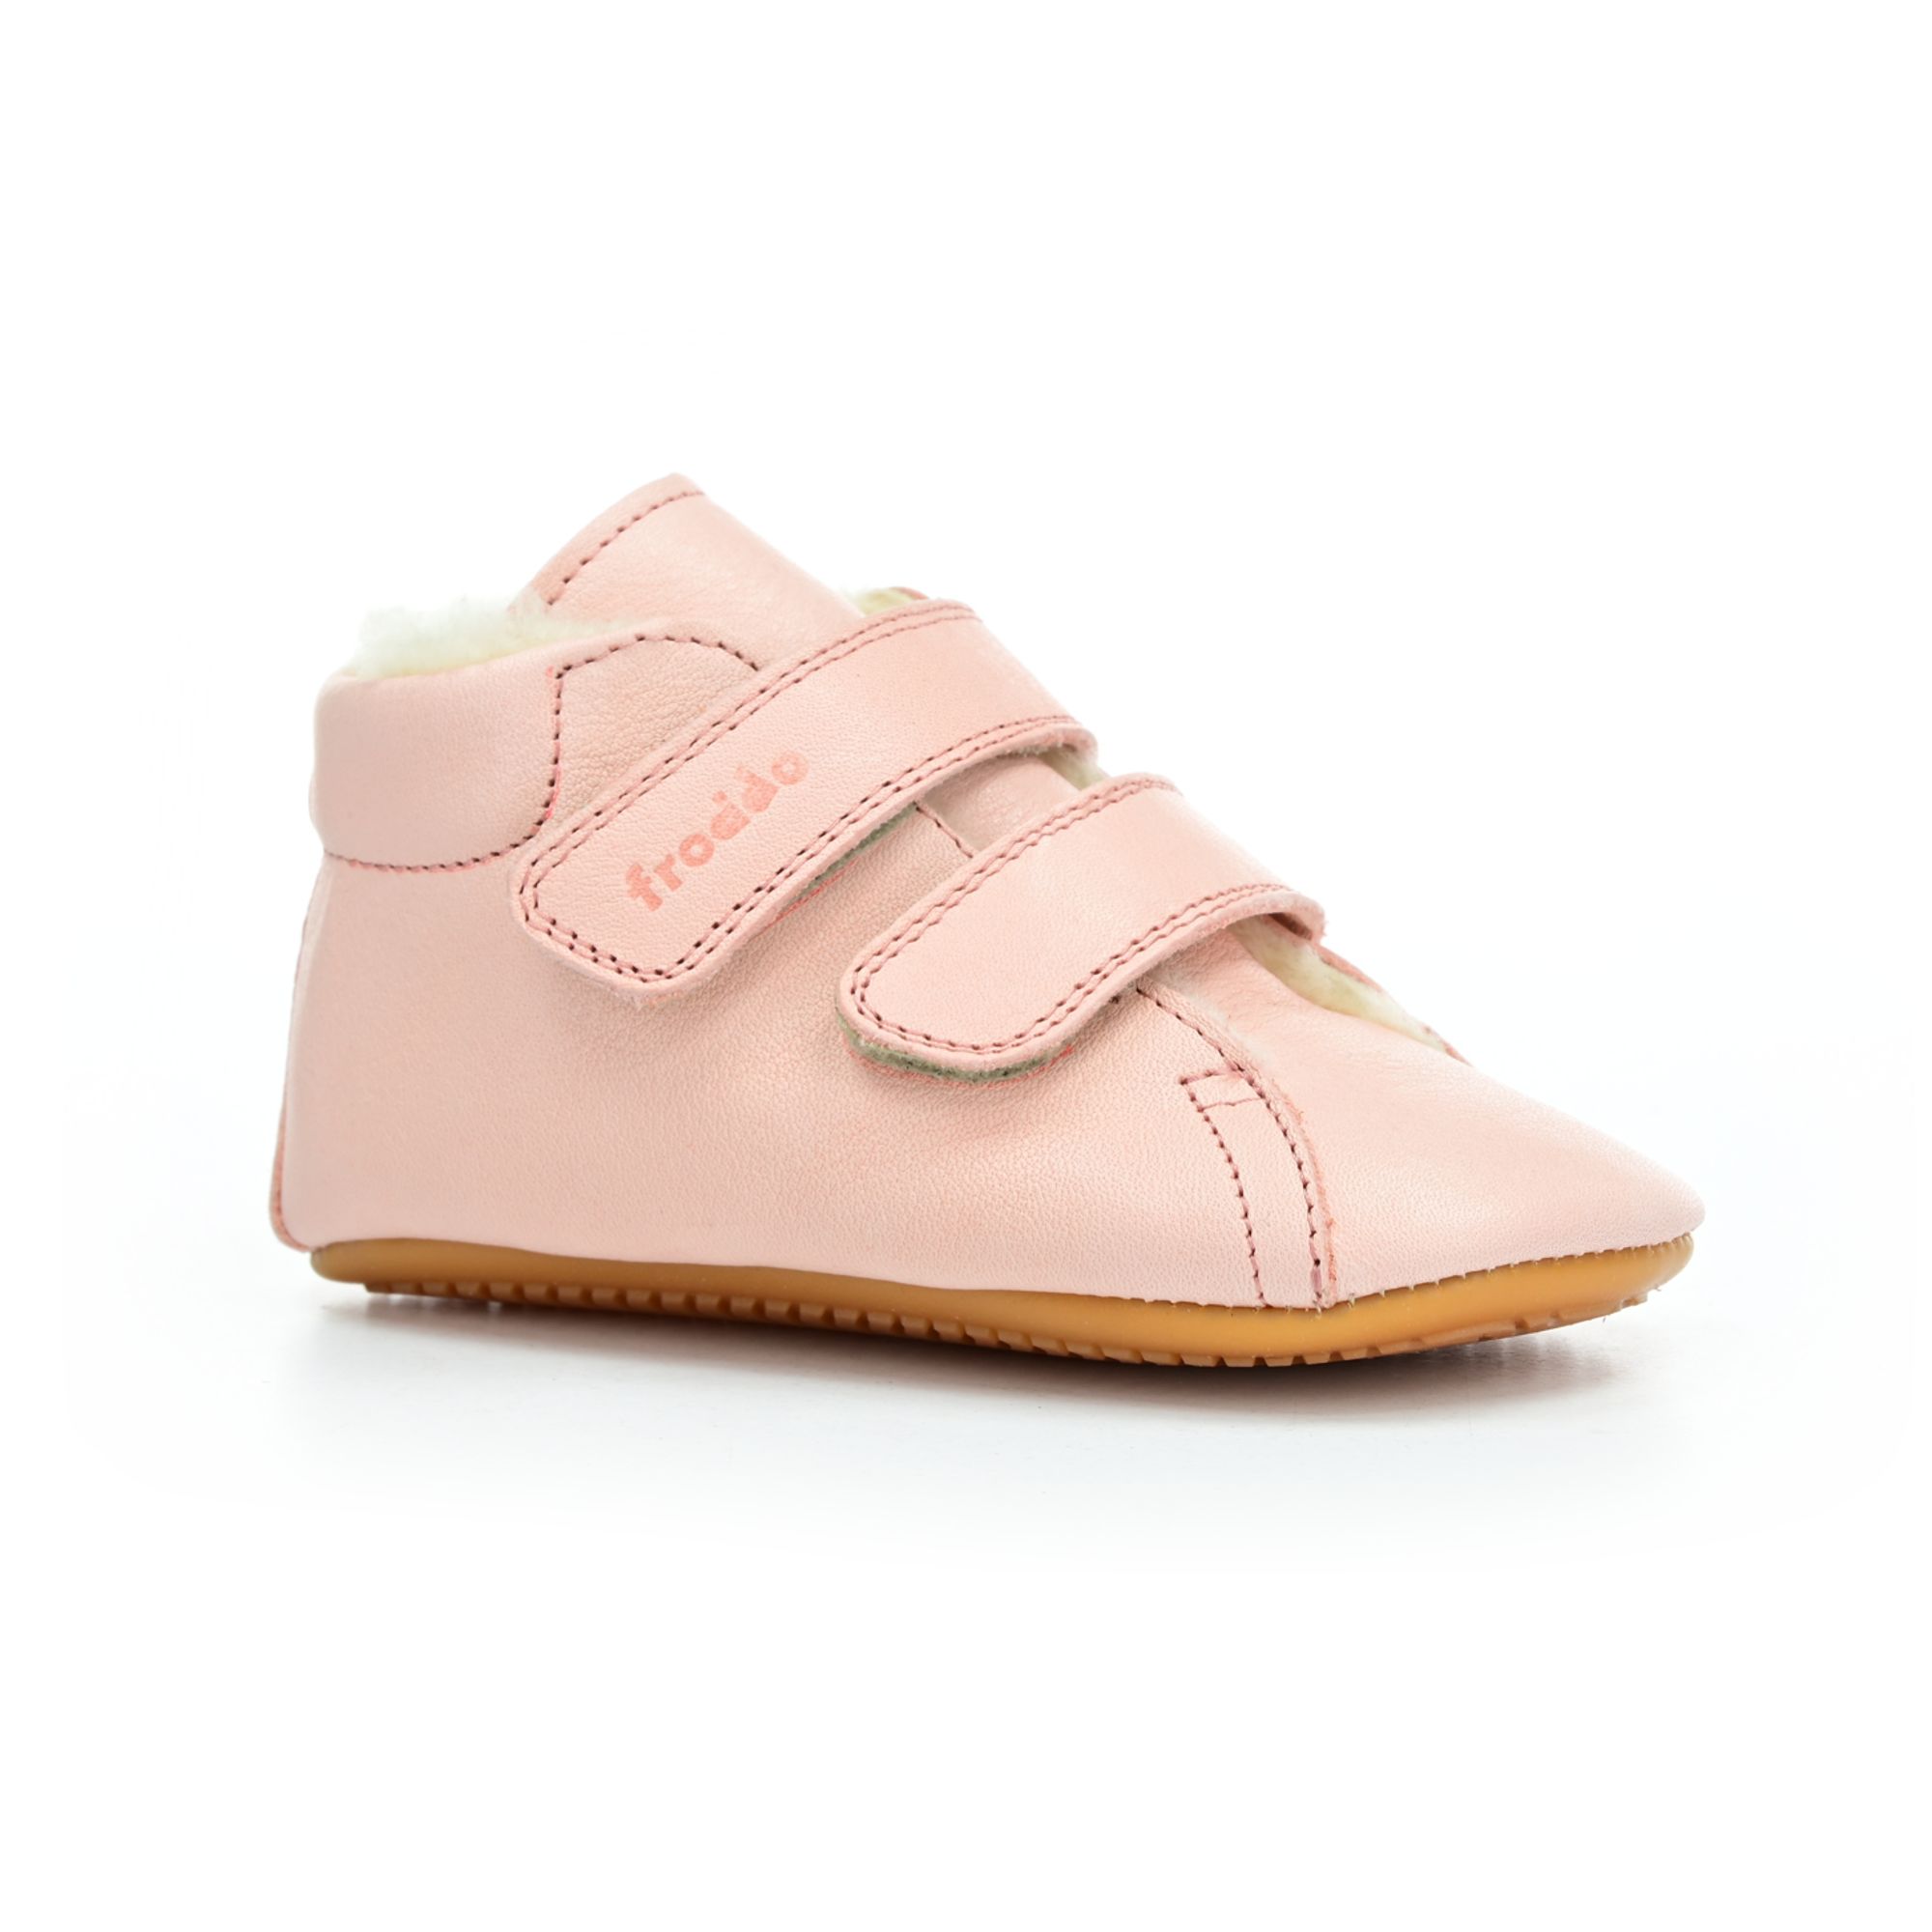 Levně boty Froddo Pink G1130013-1 (Prewalkers, s kožešinou)